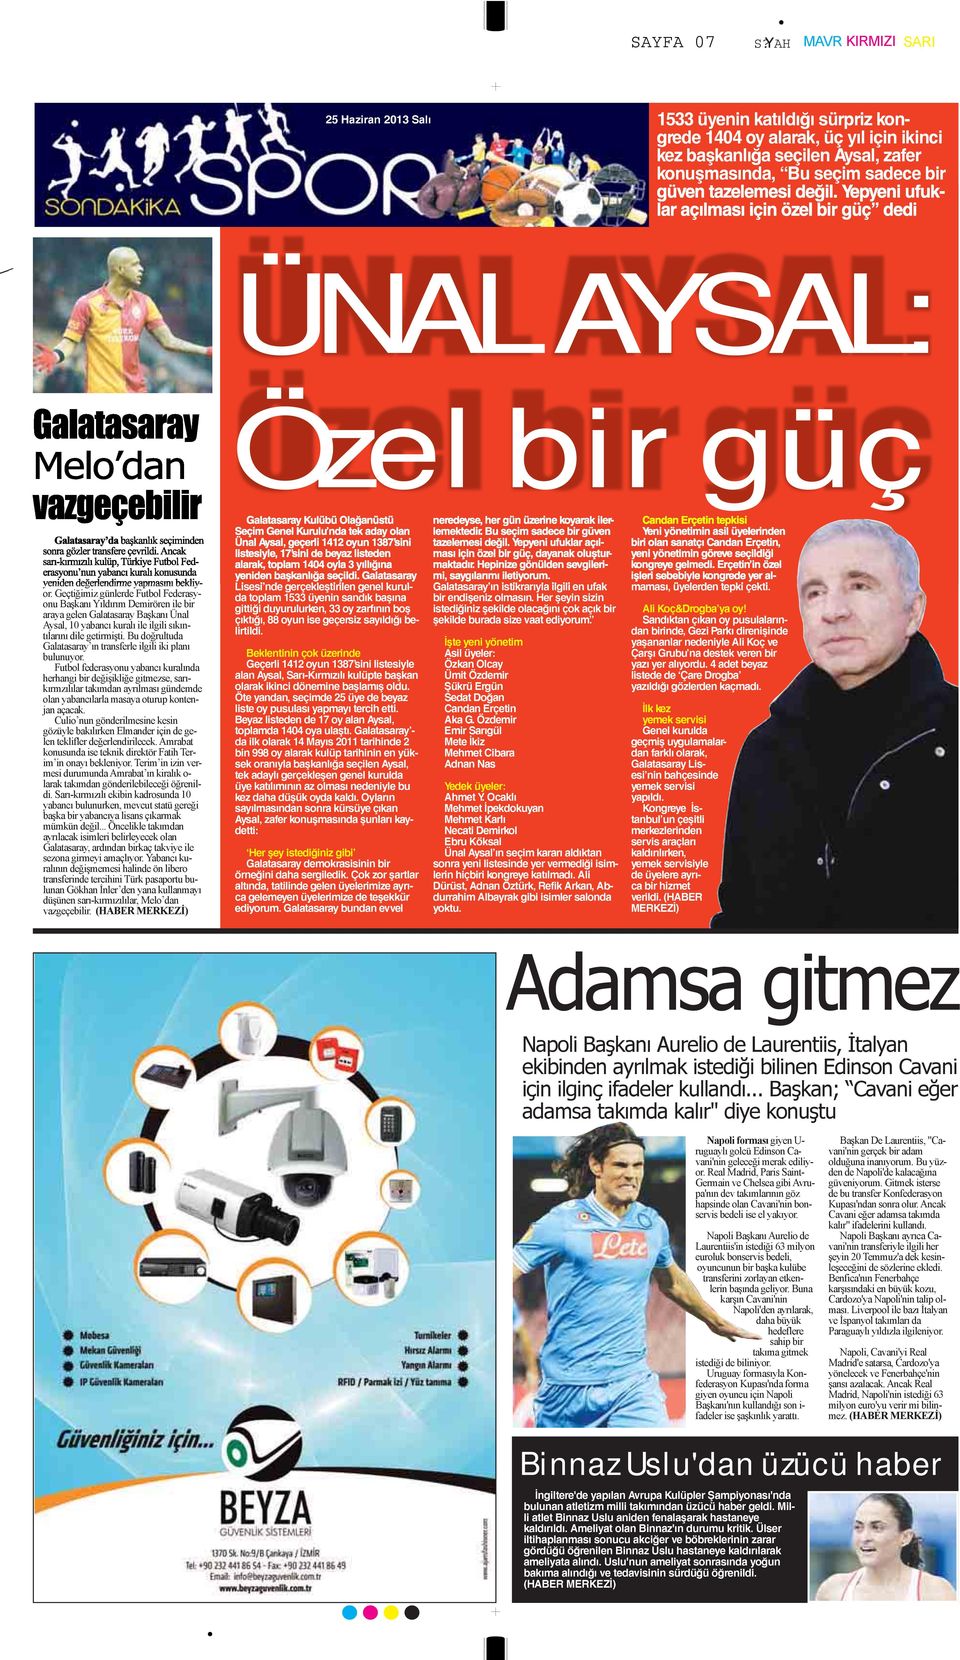 Ancak sarı-kırmızılı kulüp, Türkiye Futbol Federasyonu nun yabancı kuralı konusunda yeniden değerlendirme yapmasını bekliyor.